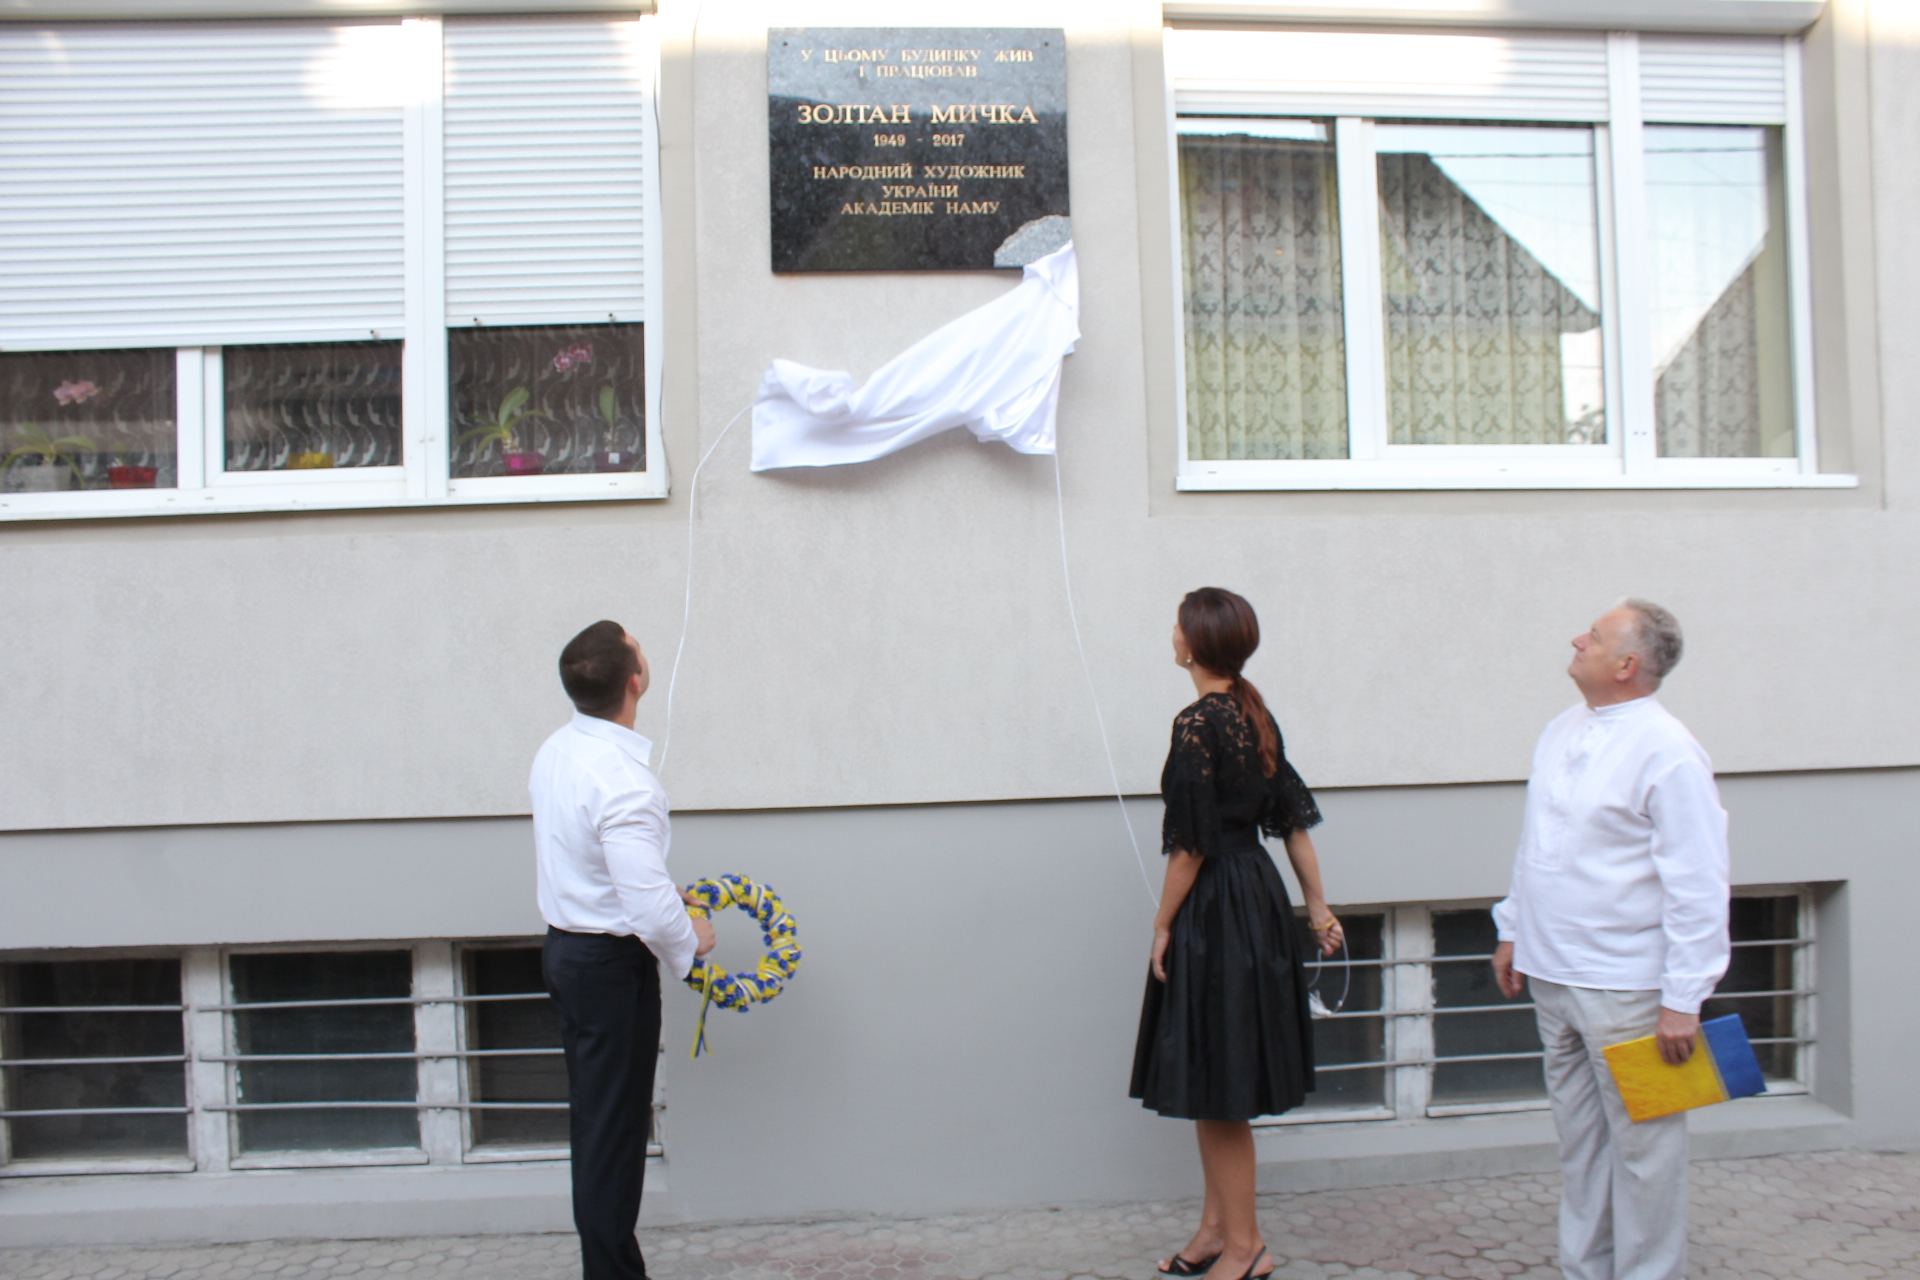 У Мукачеві відкрили меморіальну дошку художникові Золтану Мичці (ФОТО)